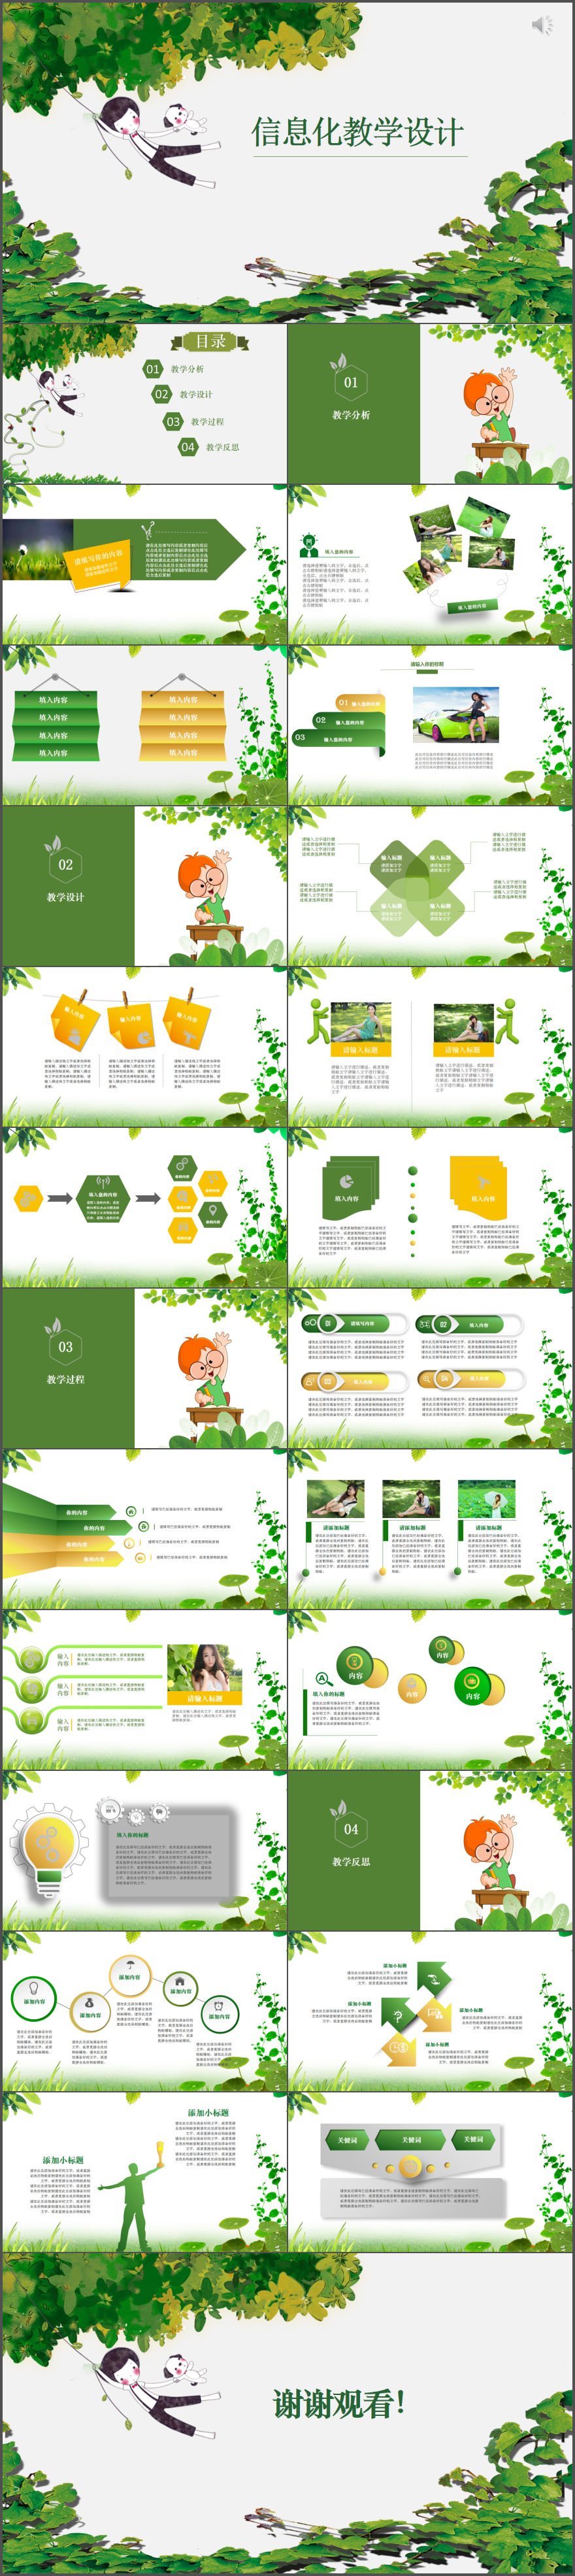 绿色简约信息化教学设计动态PPT模板